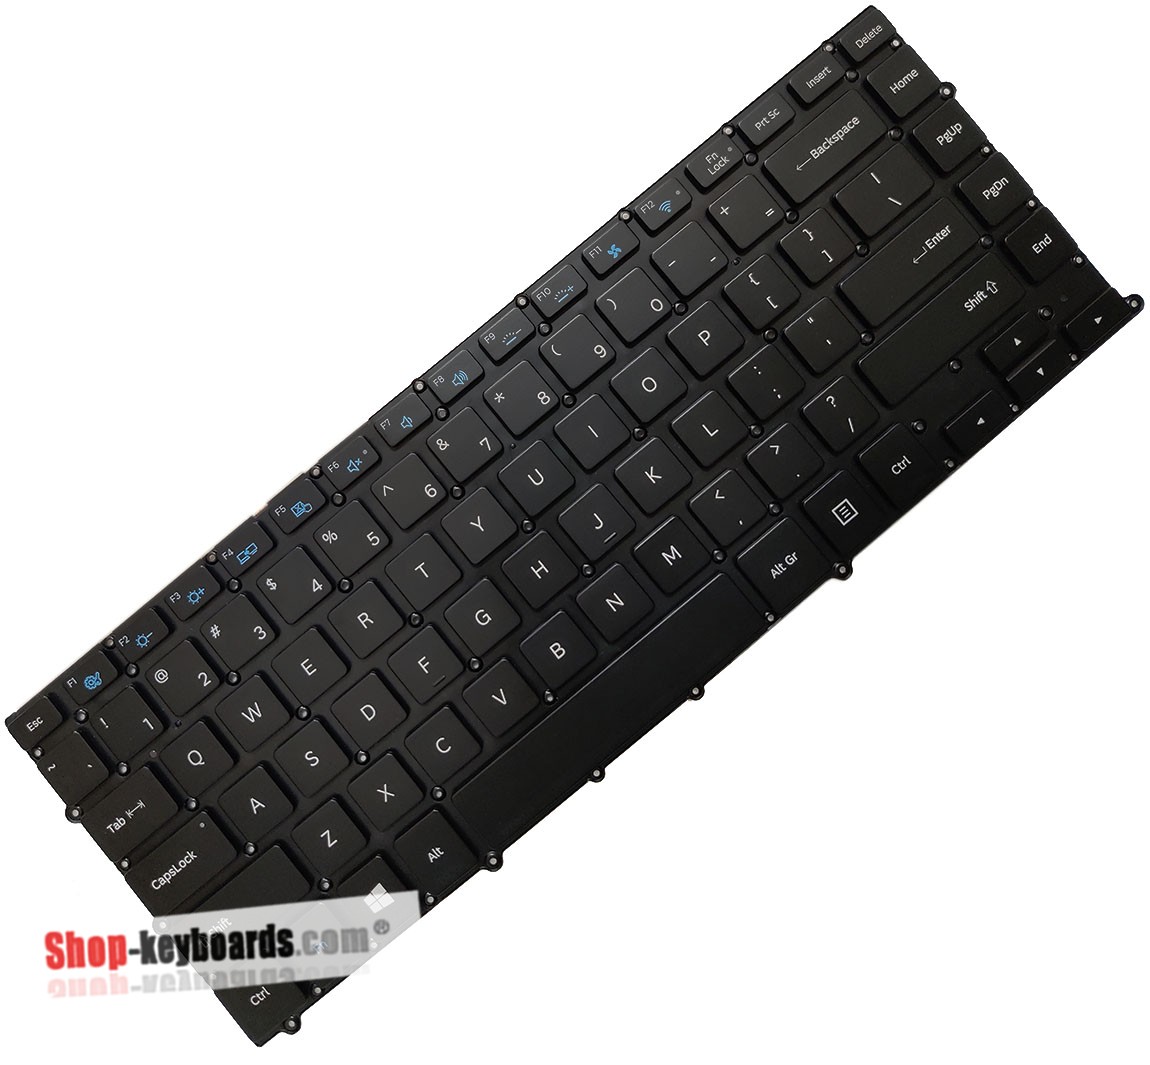 Samsung NT900X4C-K01UK  Keyboard replacement